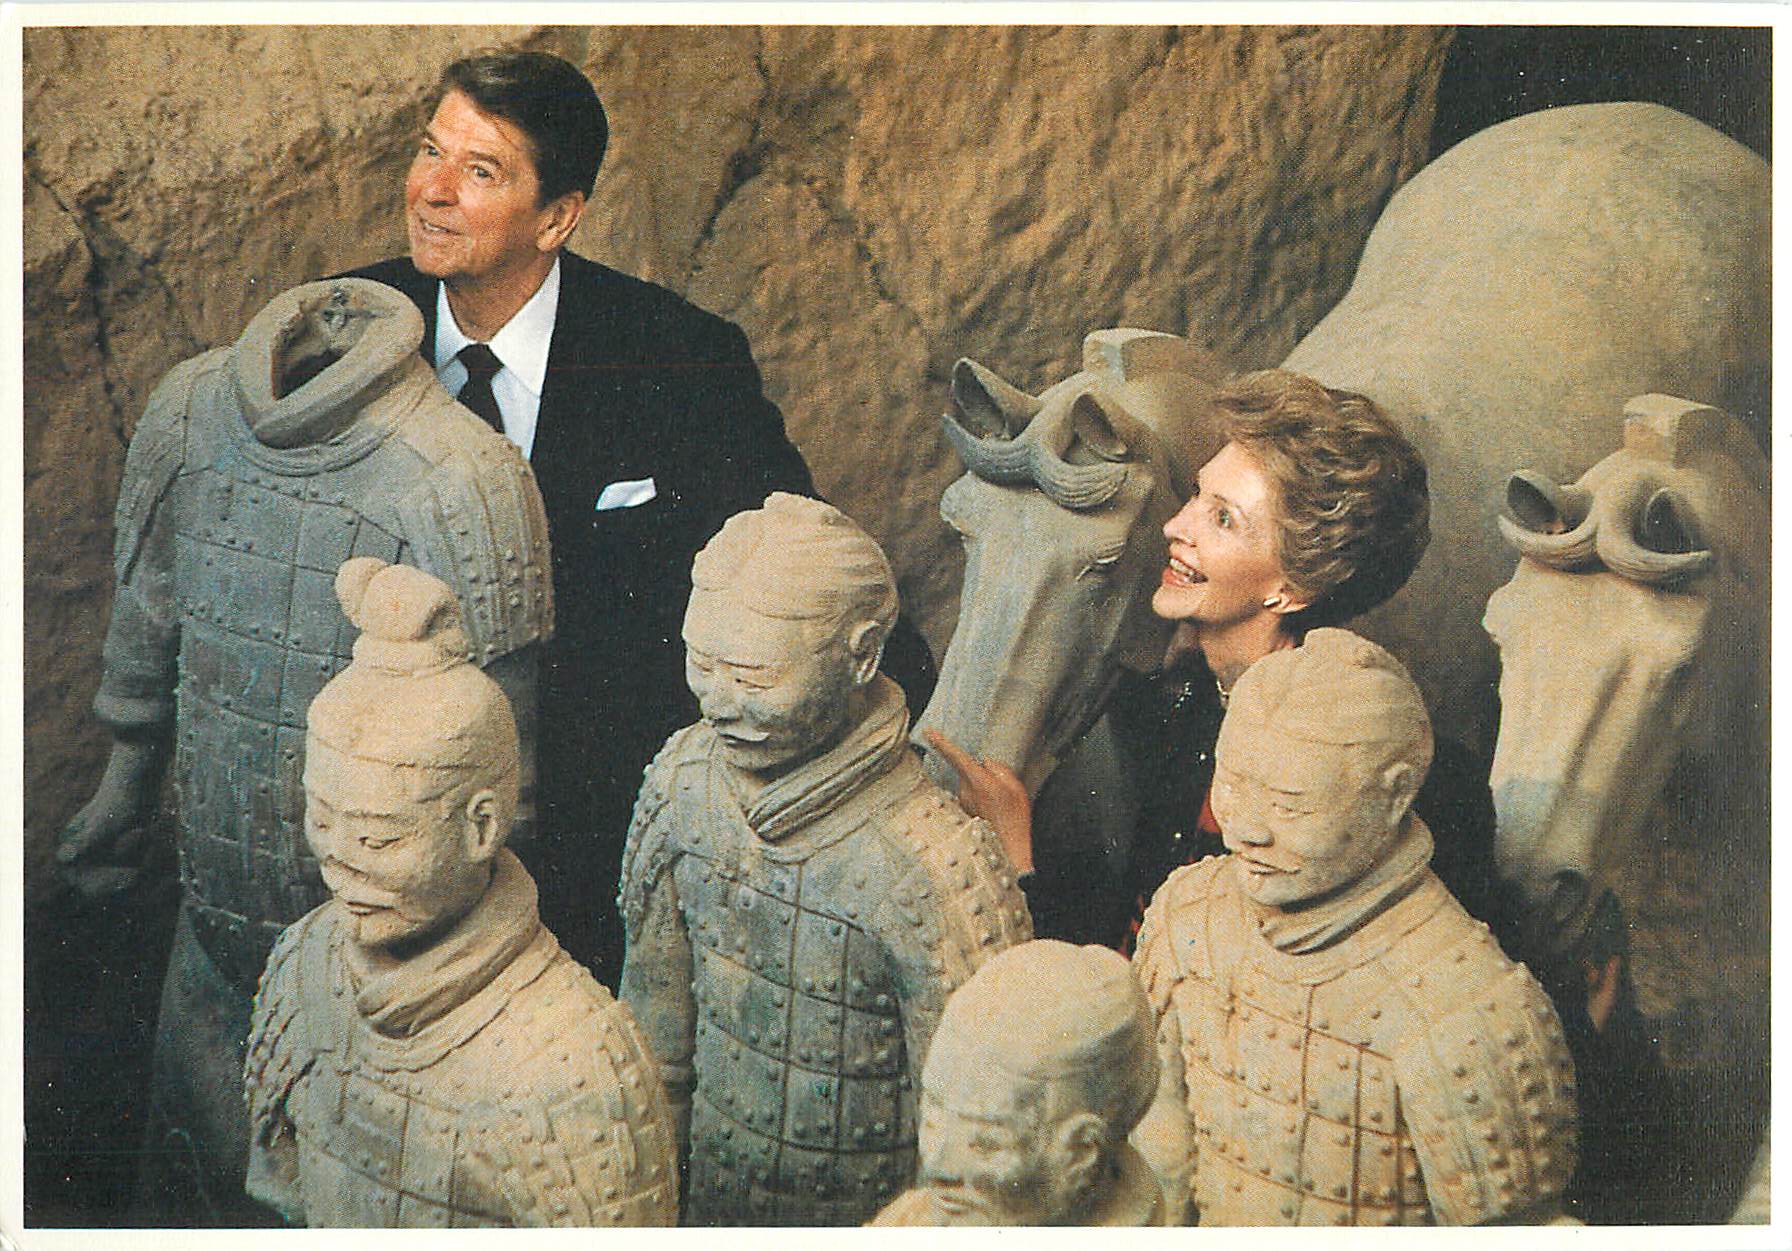 "Reagan in China"